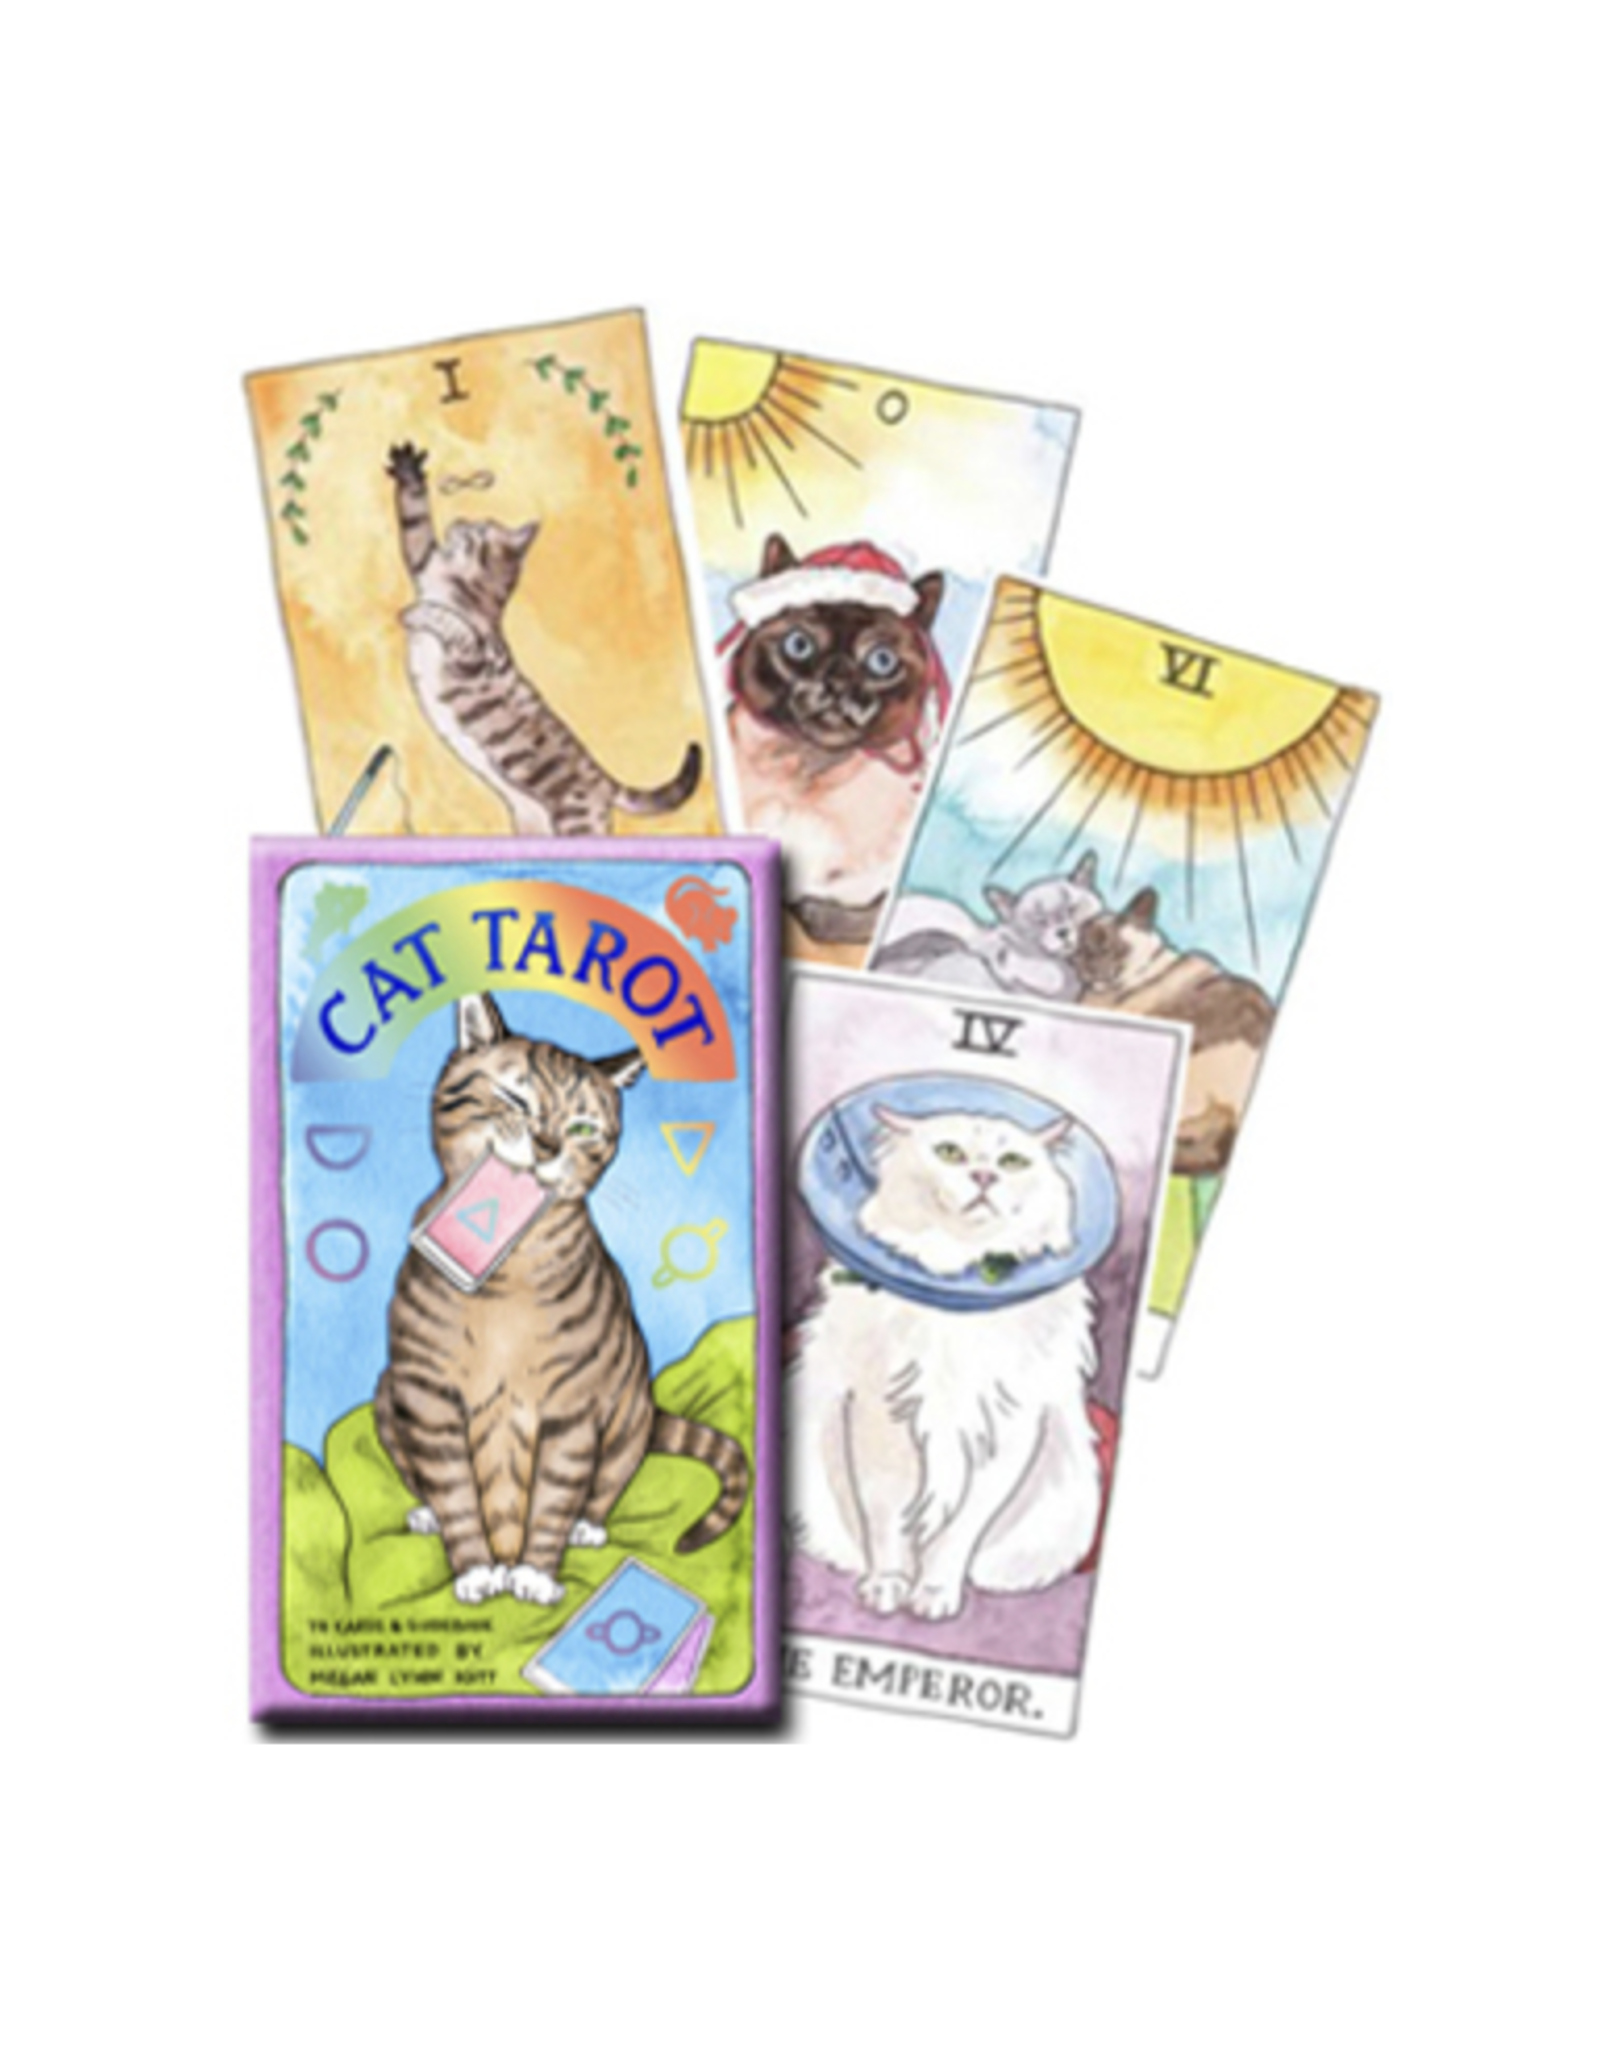 Cat Tarot Deck - Whimsical and Humorous Tarot Deck